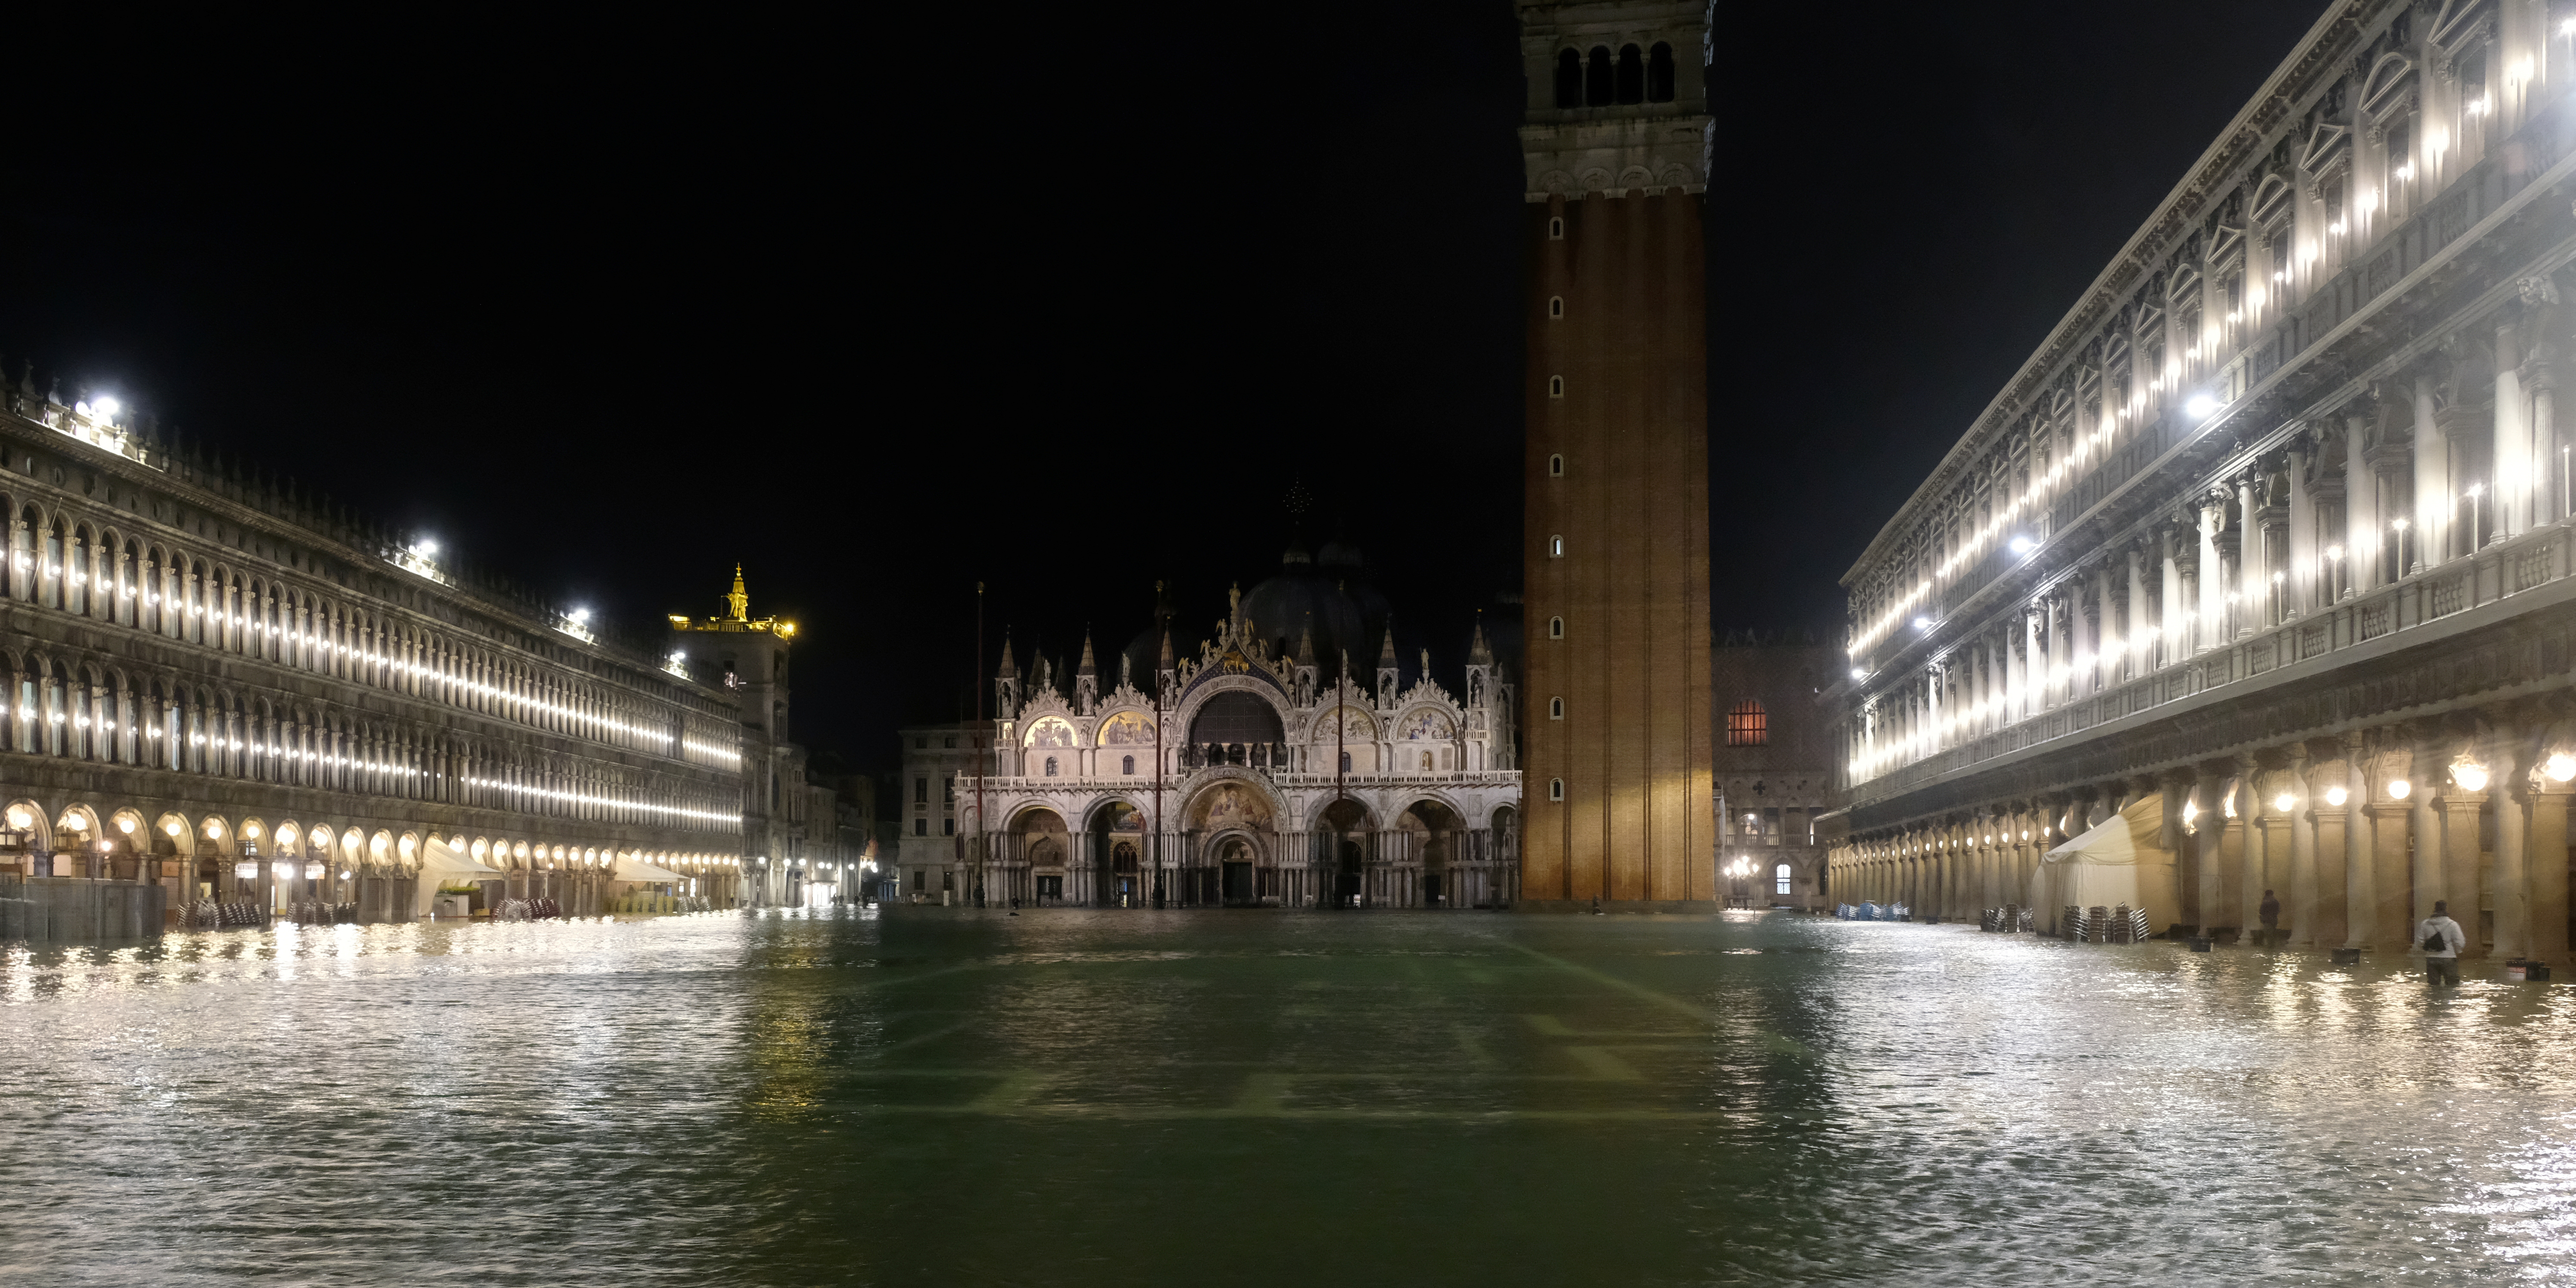 Venise n'est pas déclarée patrimoine en péril, contrairement aux recommandations de l'Unesco